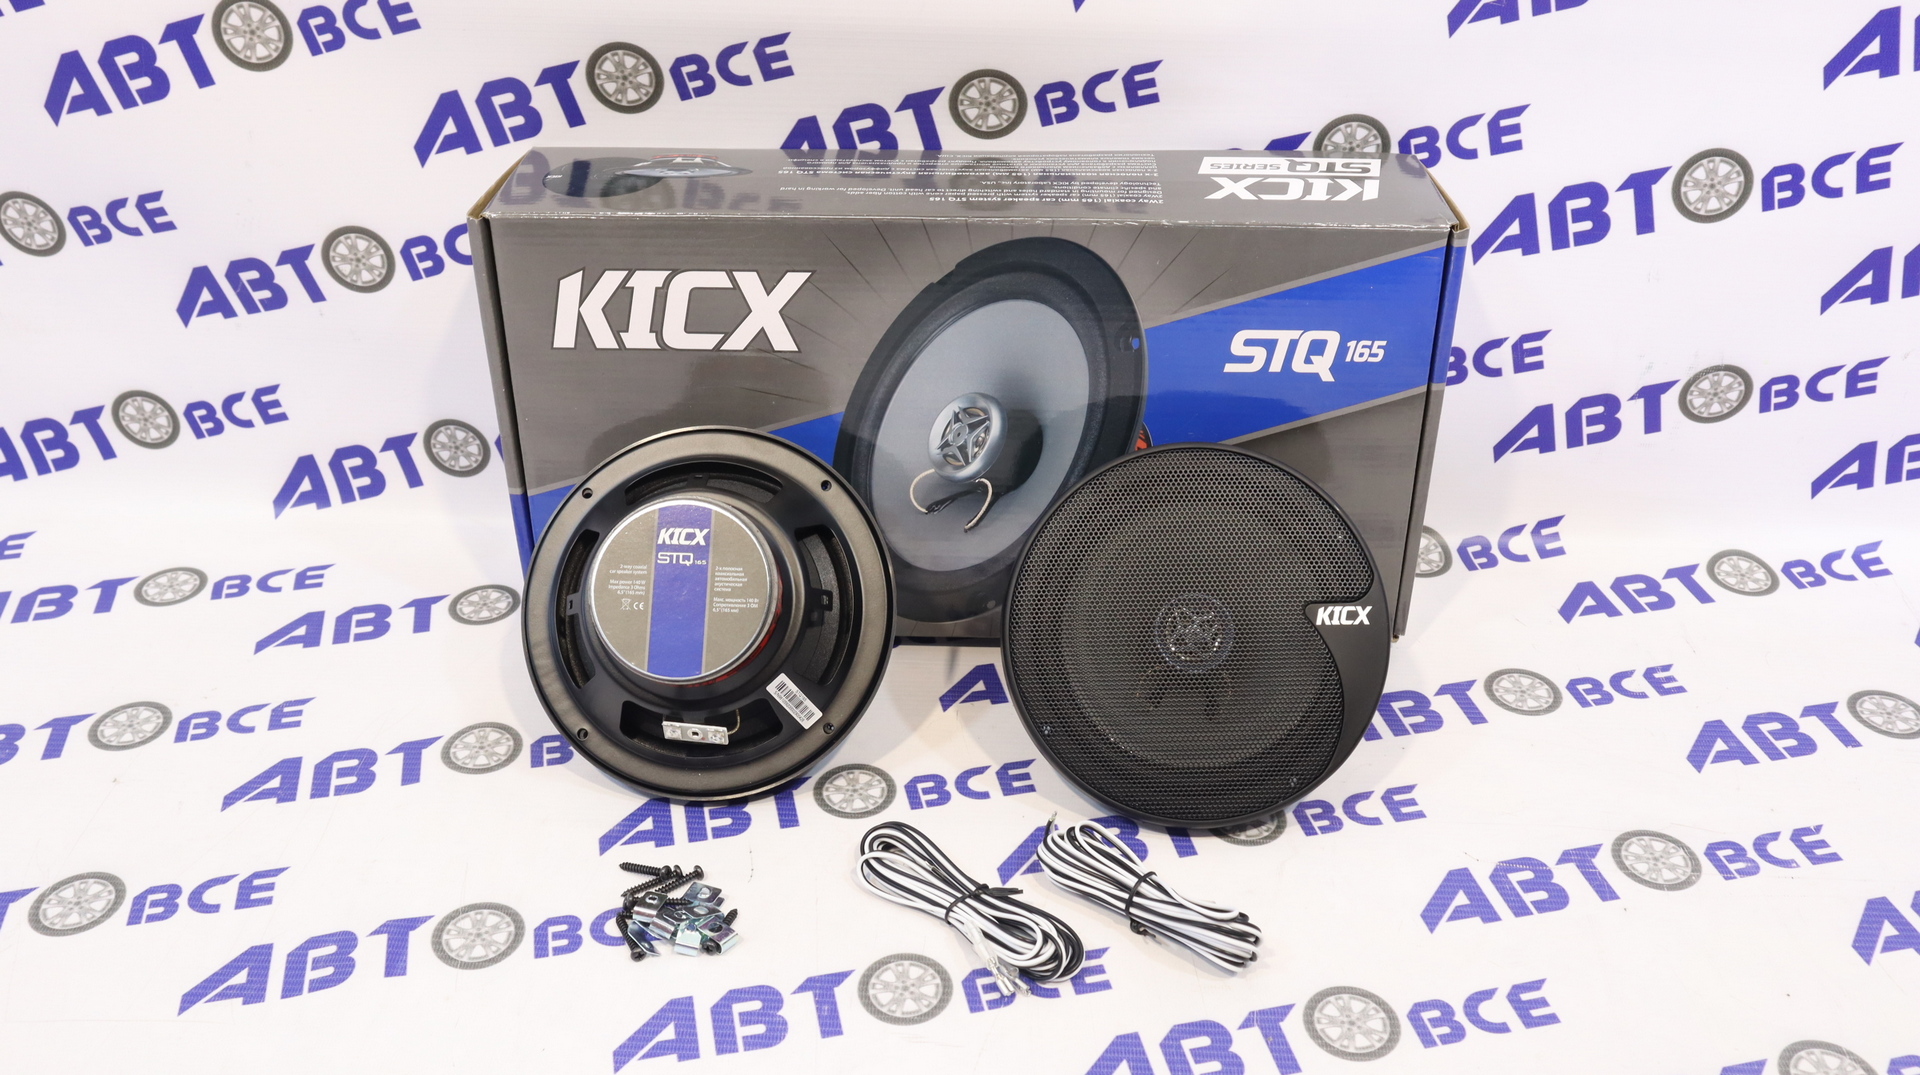 Динамики (акустика) комплект 2шт R16 коаксиальные 2-х полосные STQ-165 KICX